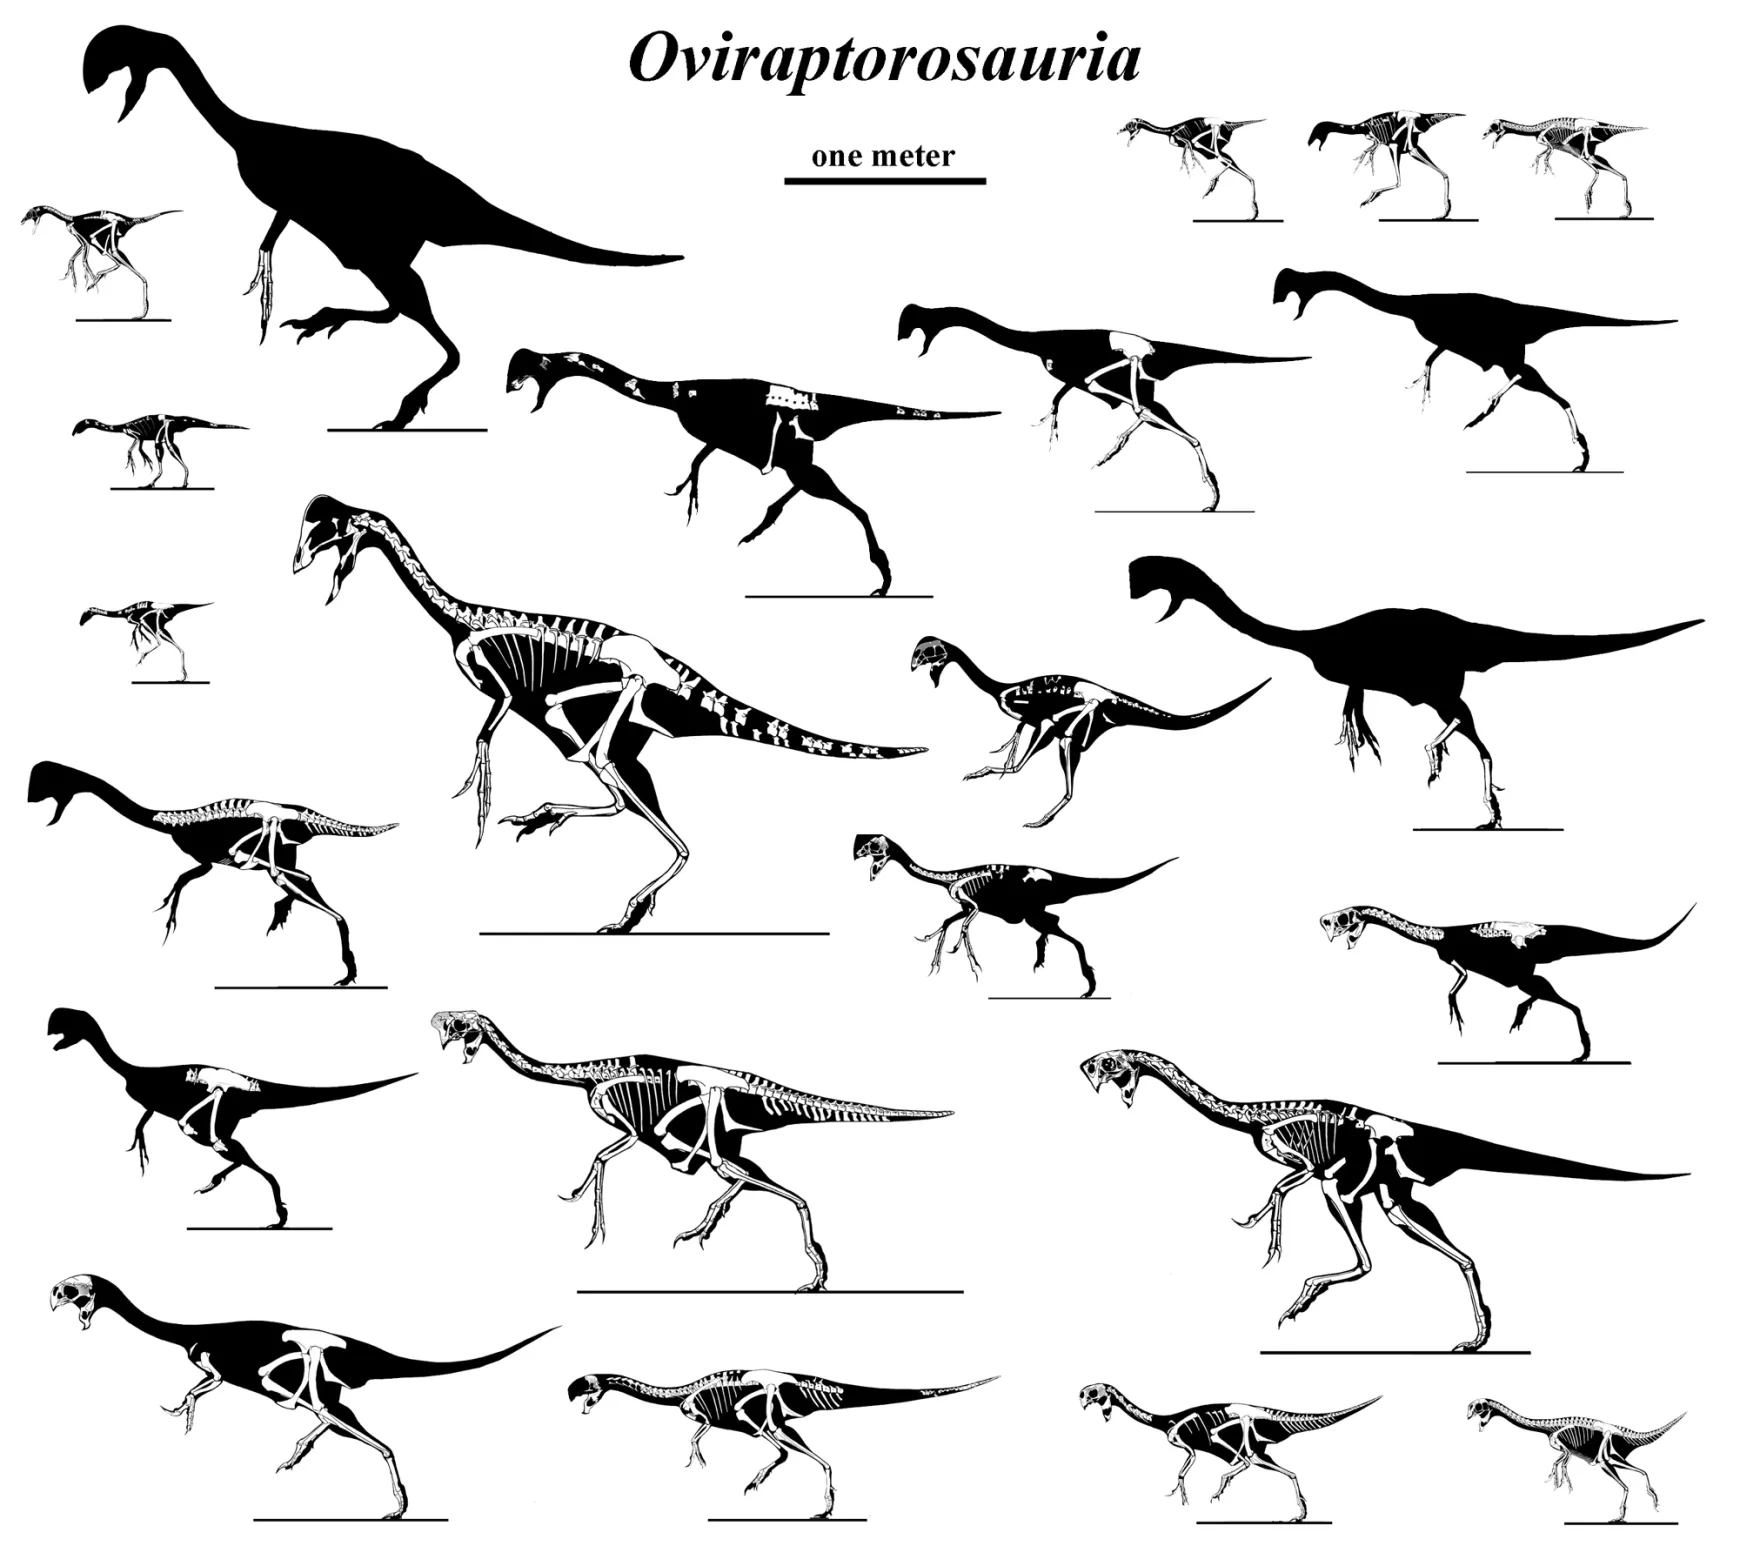 Oviraptoroszauruszok családja